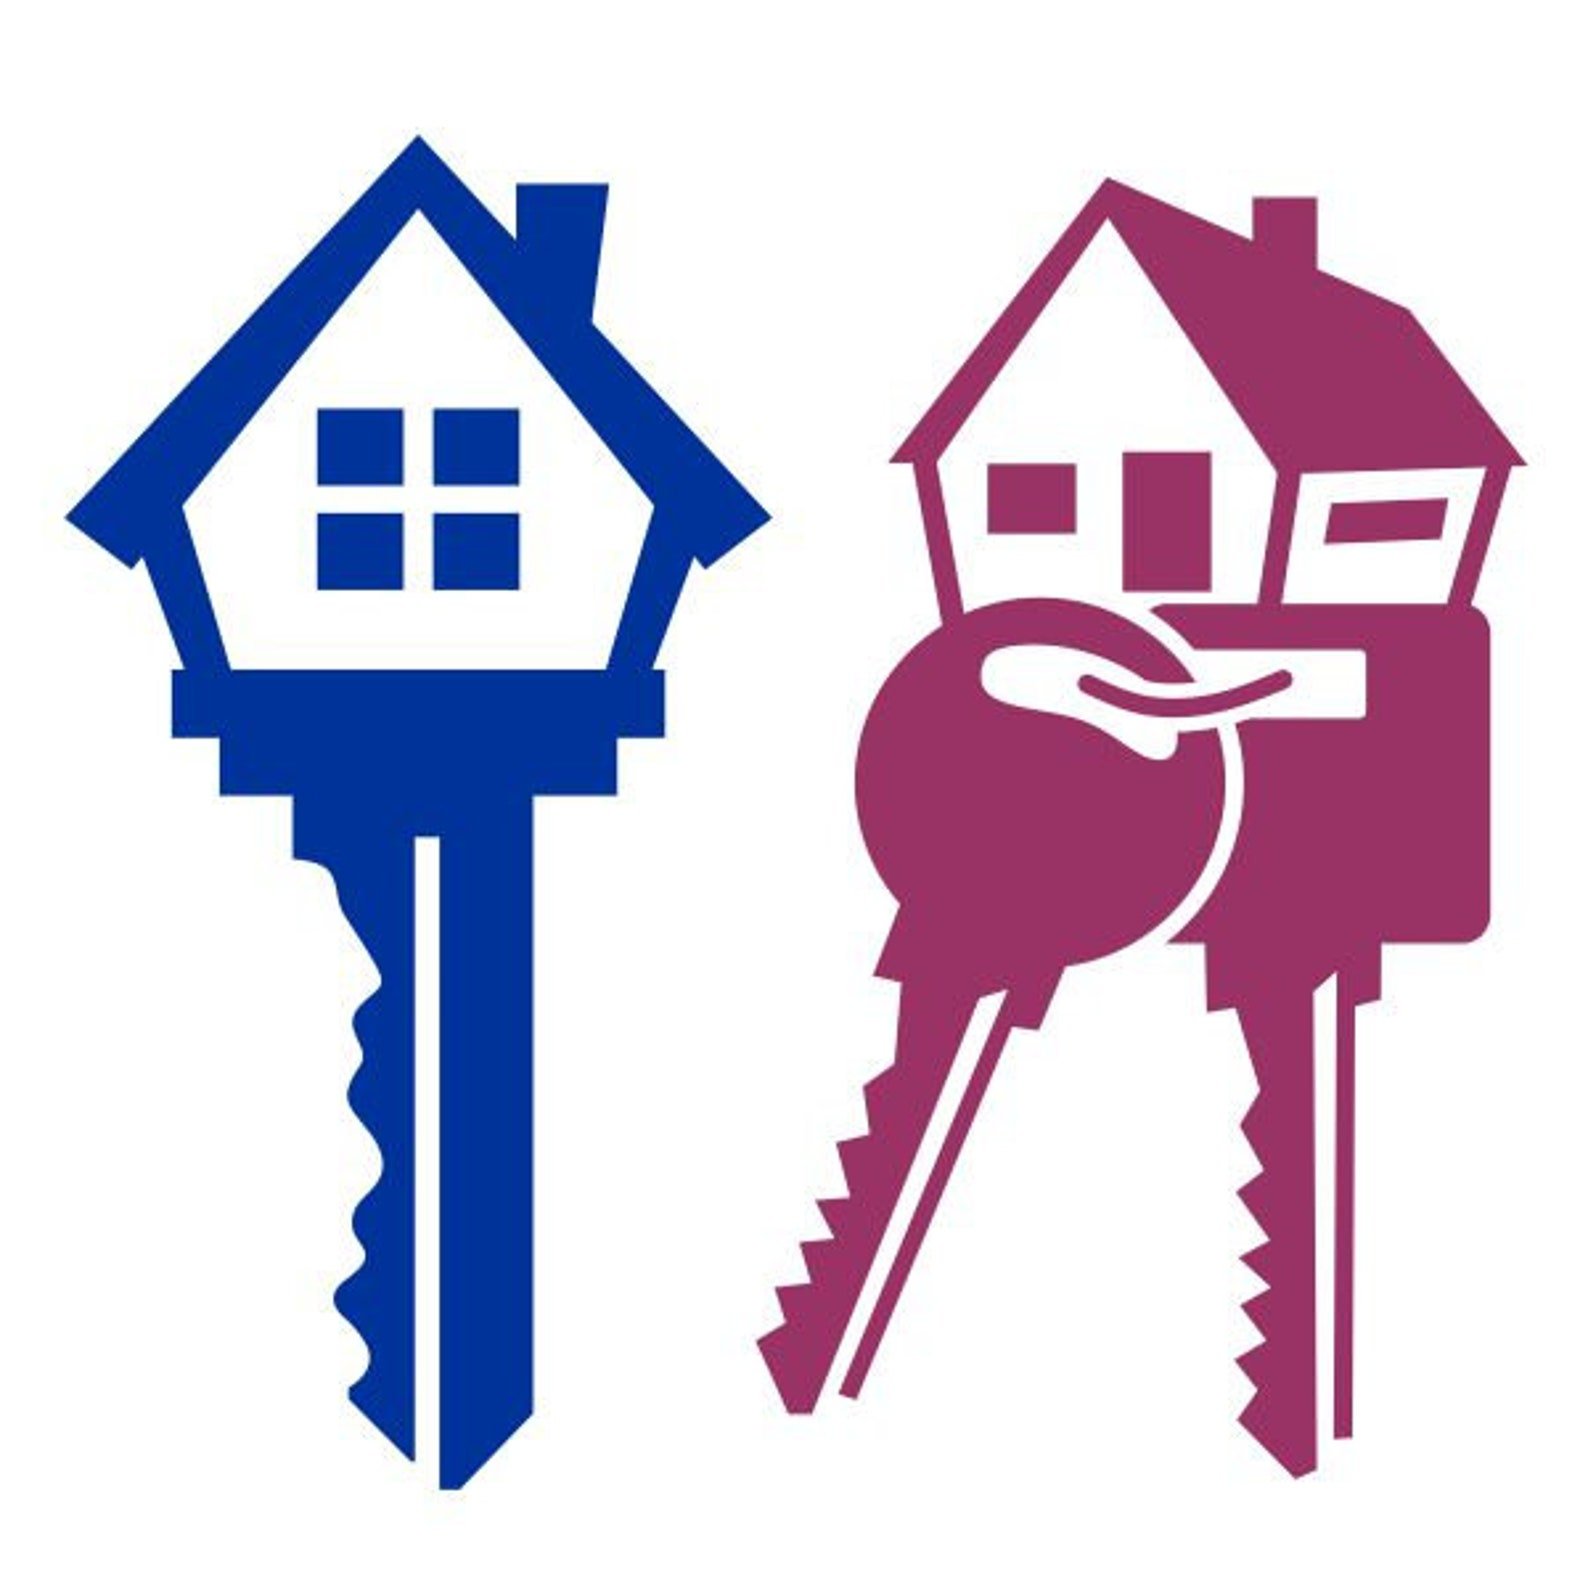 Key 2 house. Логотип дом. Дом иконка. Домик с ключами. Ключ с домиком вектор.